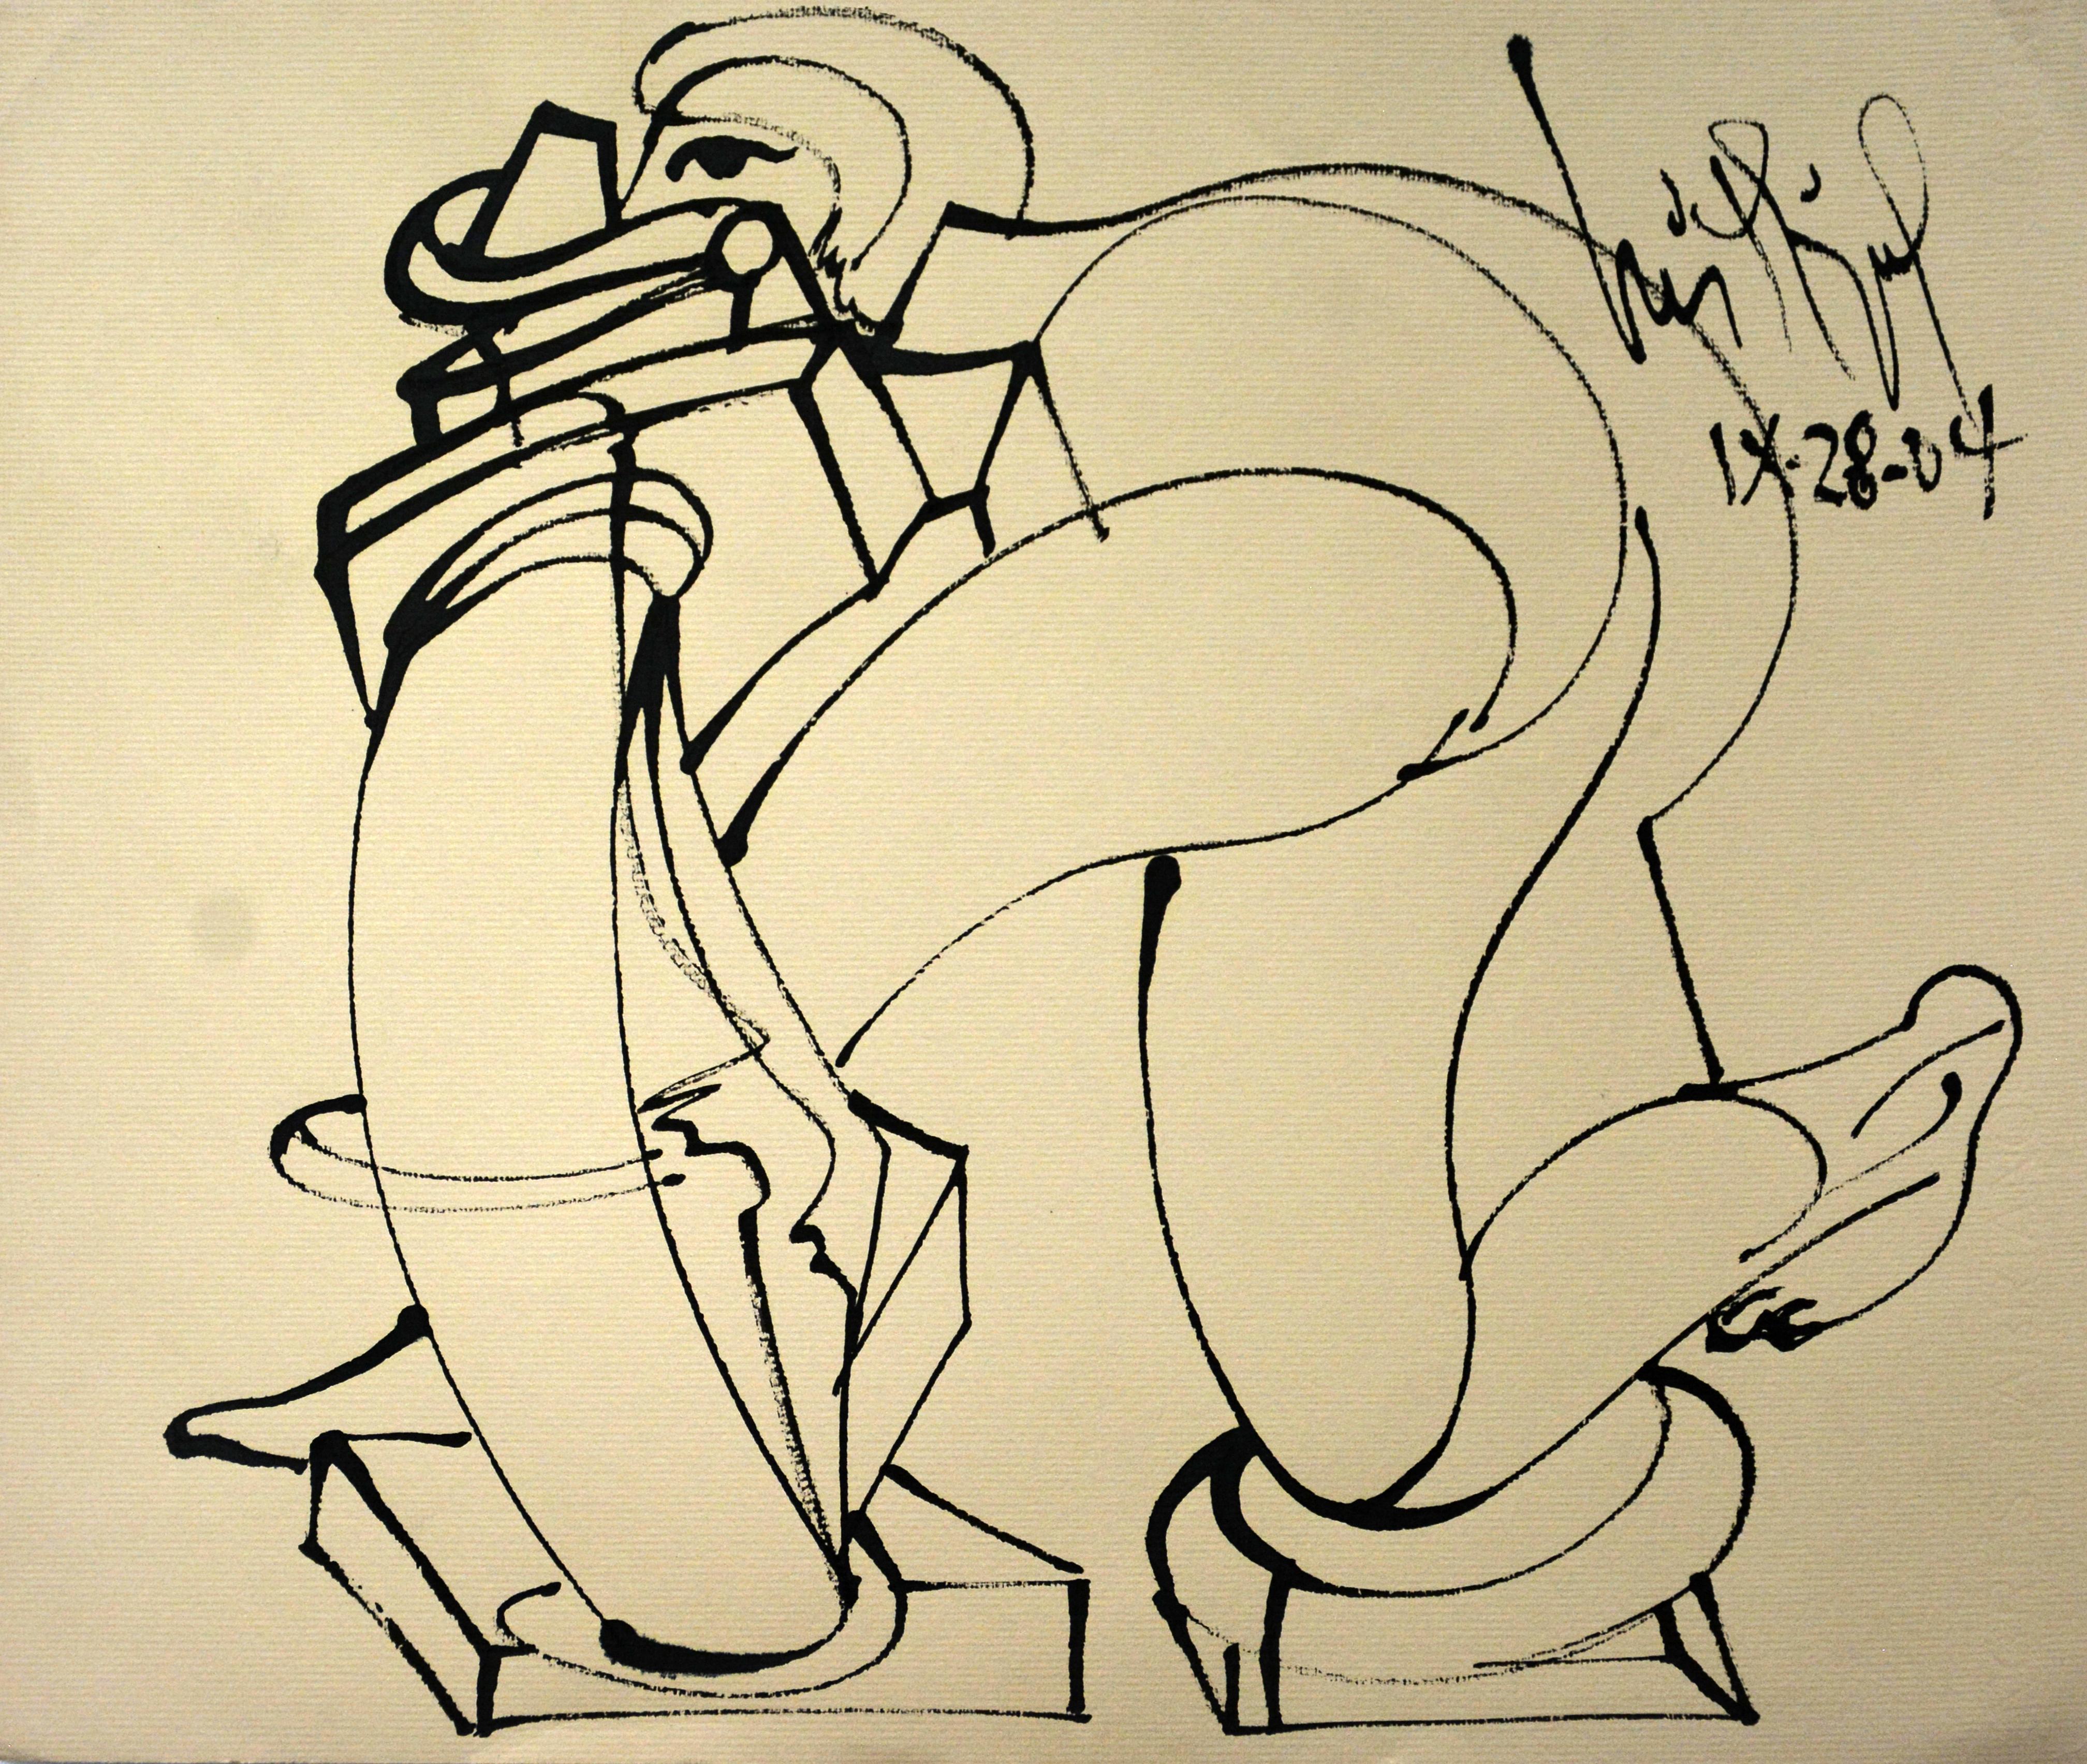 Luis Miguel Valdes  Figurative Art - Luis Miguel Valdes, ¨Enrredo¨, 2004, Work on paper, 11.8x13.8 in